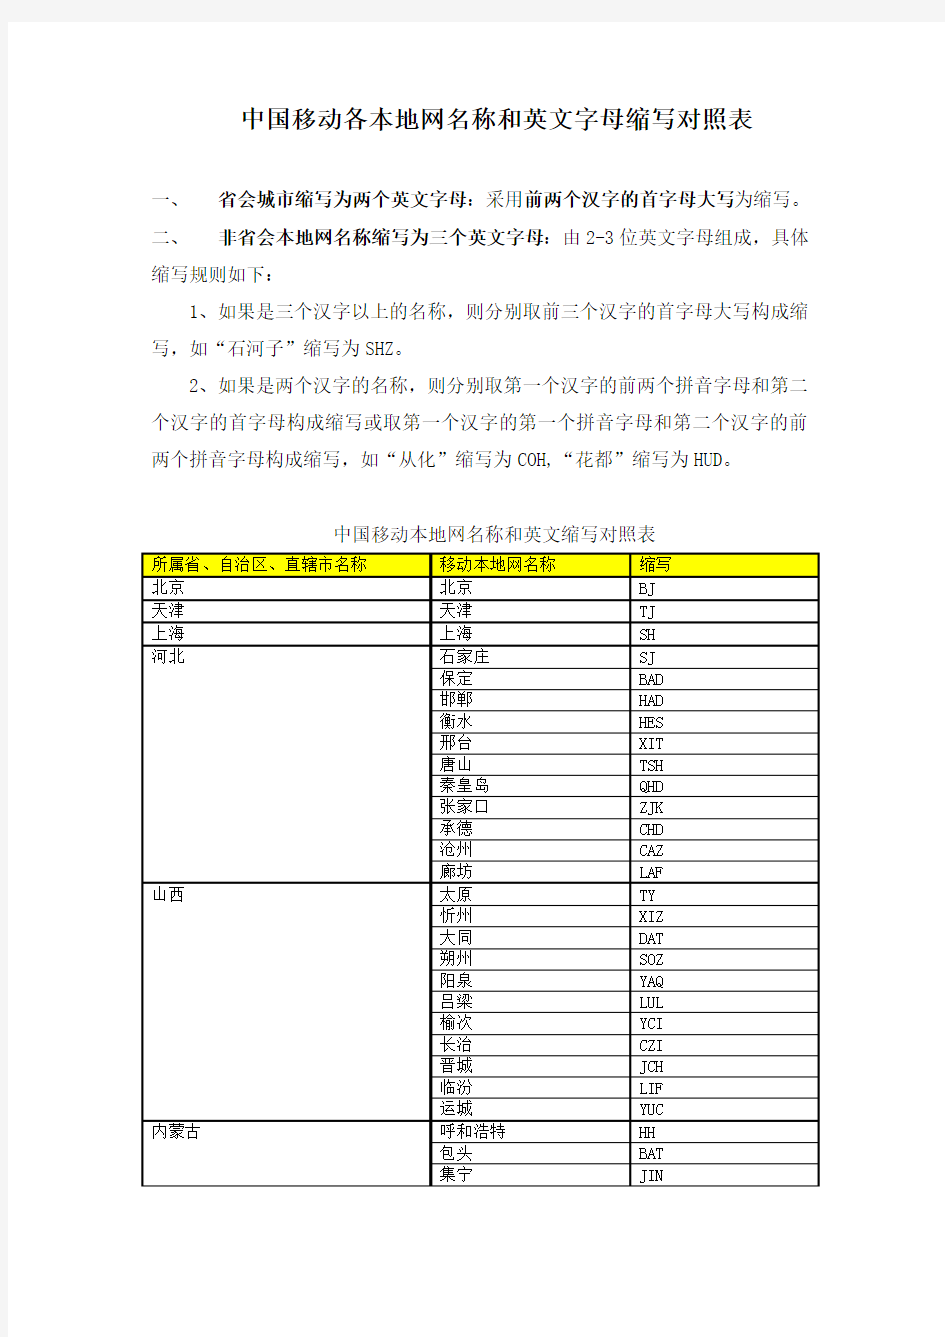 中国移动各本地网名称和英文字母缩写对照表